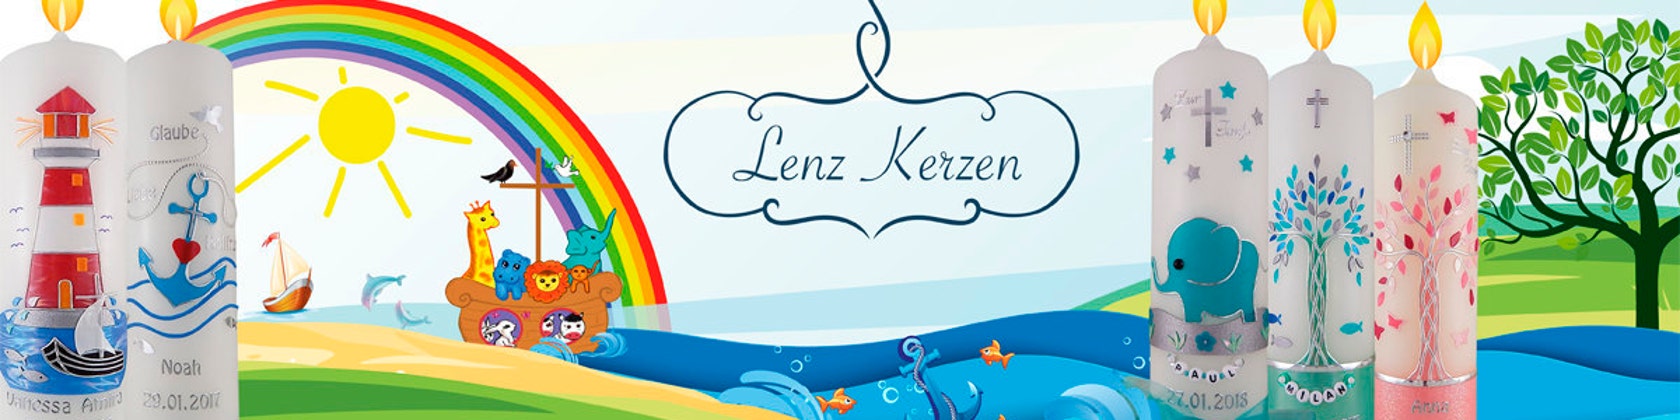 LenzKerzen - .de